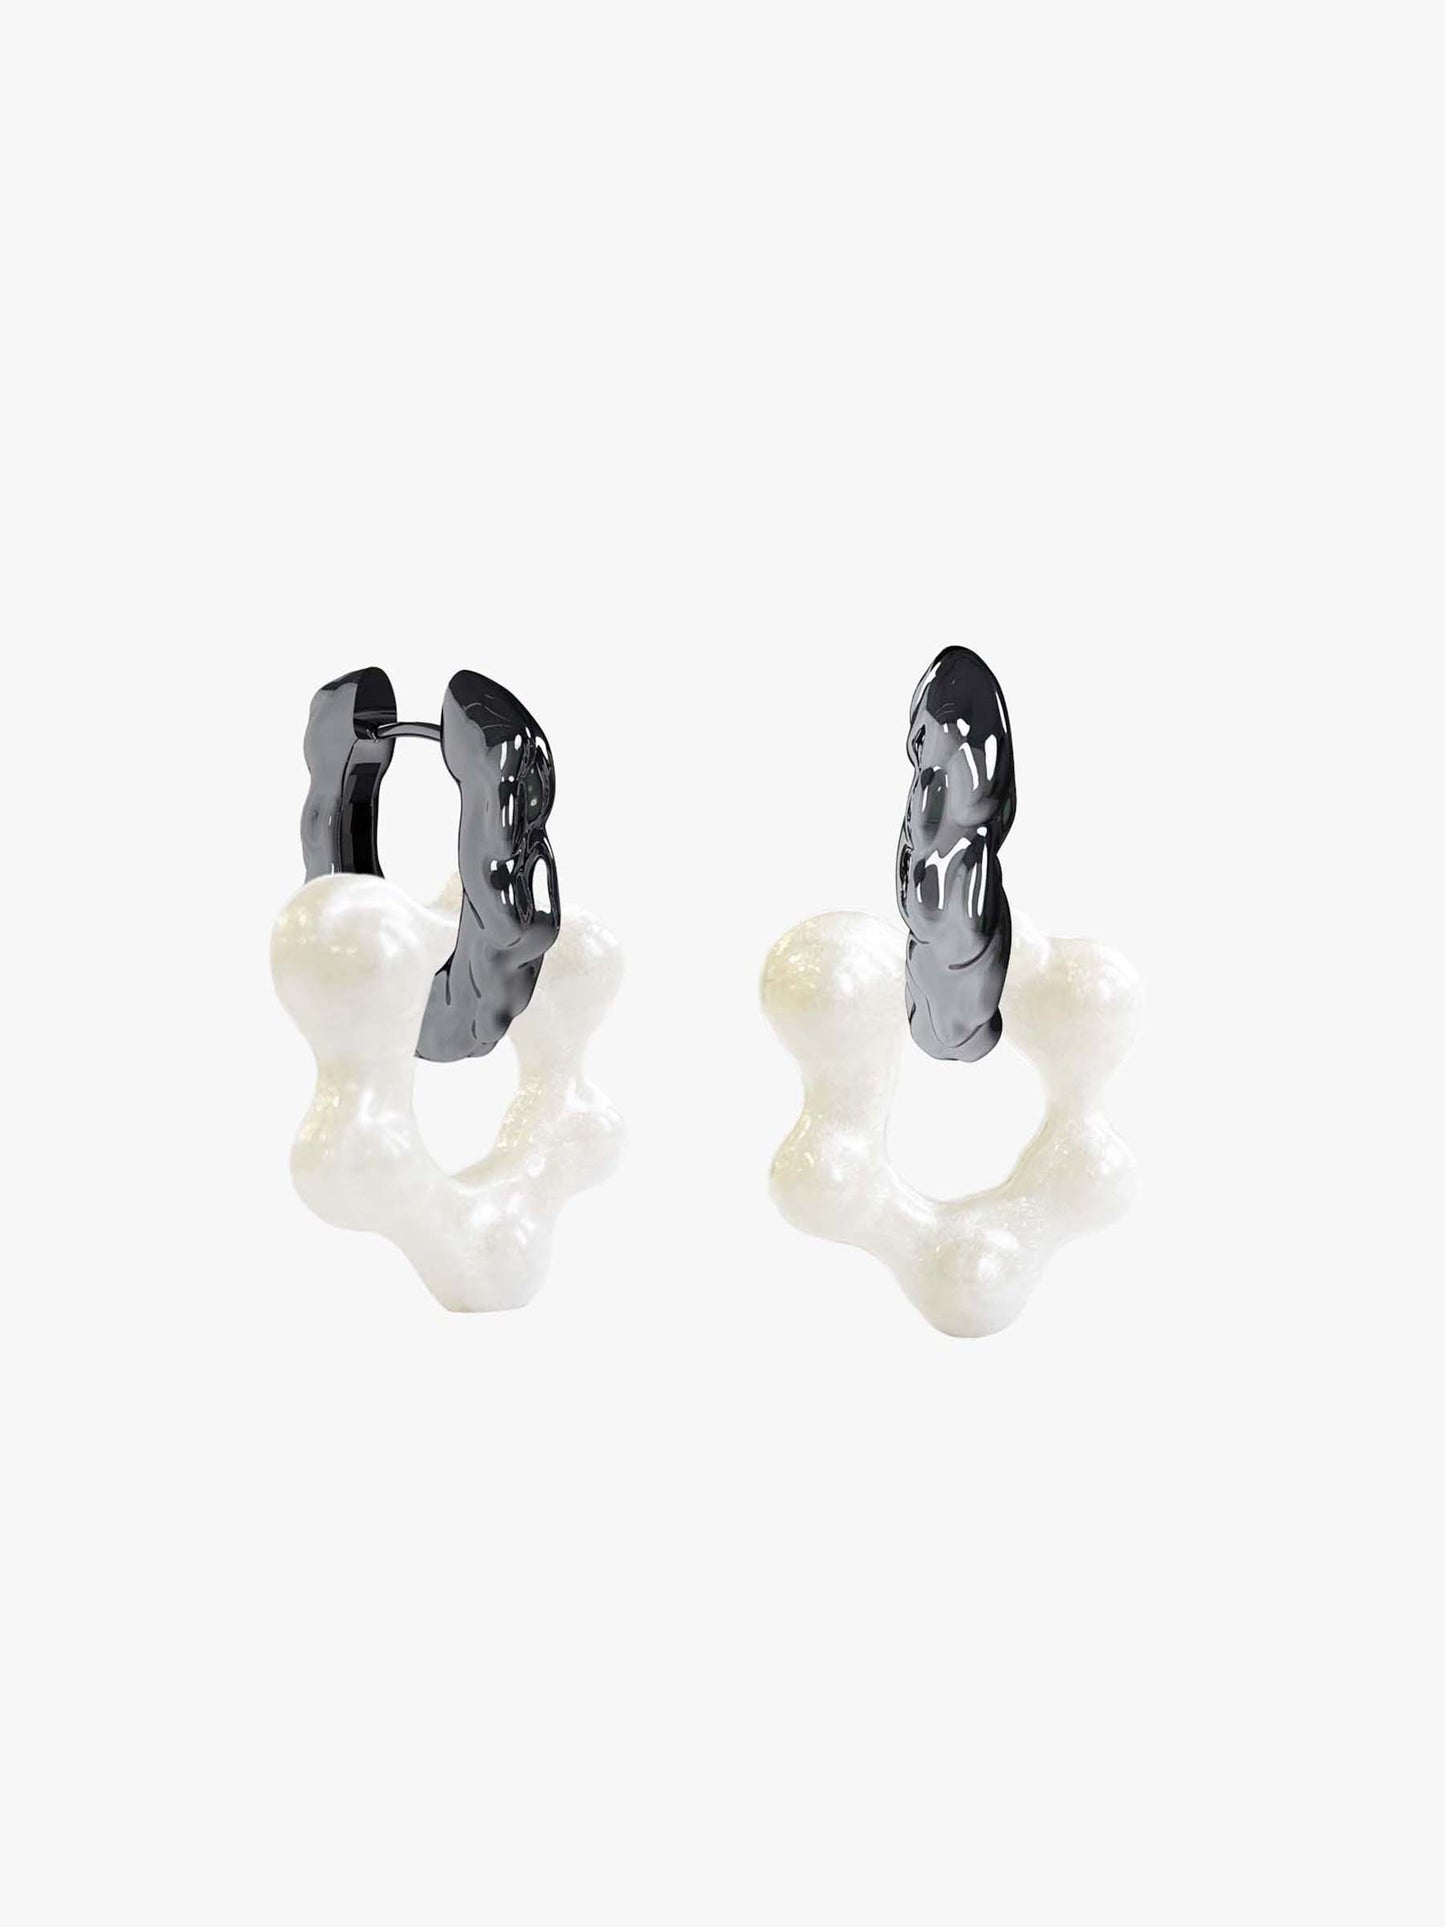 Oyo Nus Pearl silver earring (pair)